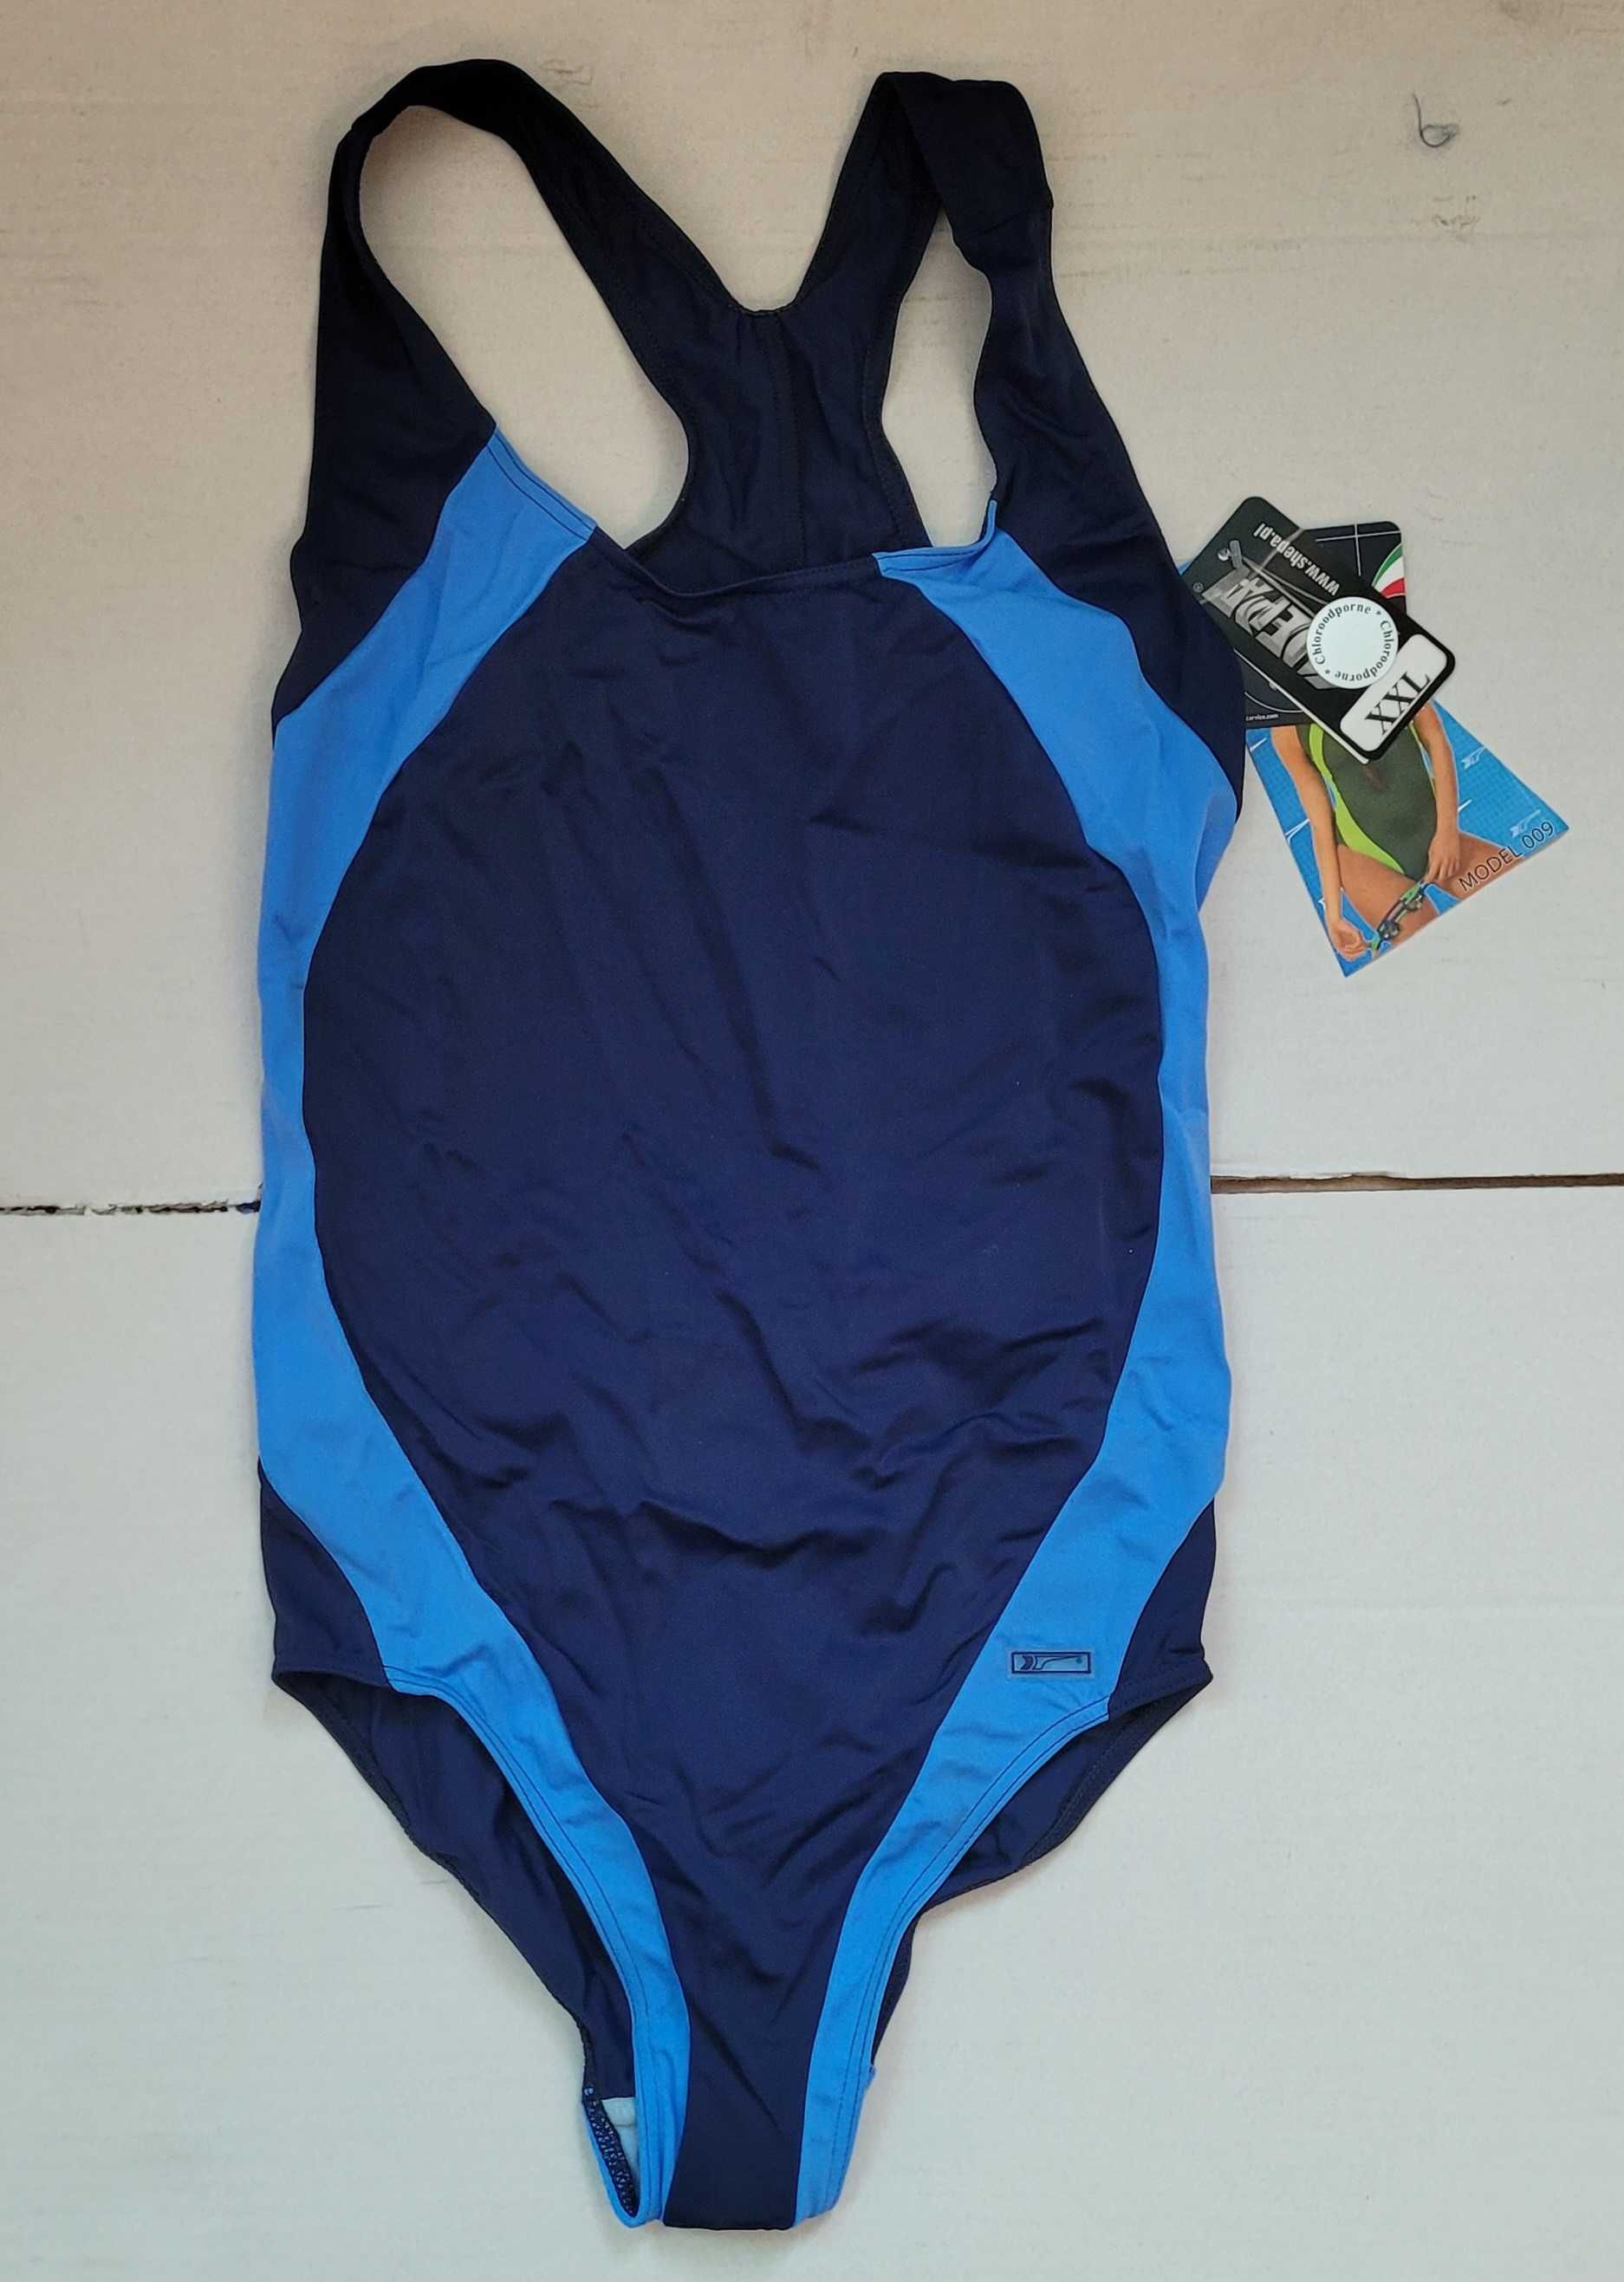 Kostium kąpielowy damski SHEPA/model 009/rozmiar XXL/niebieski